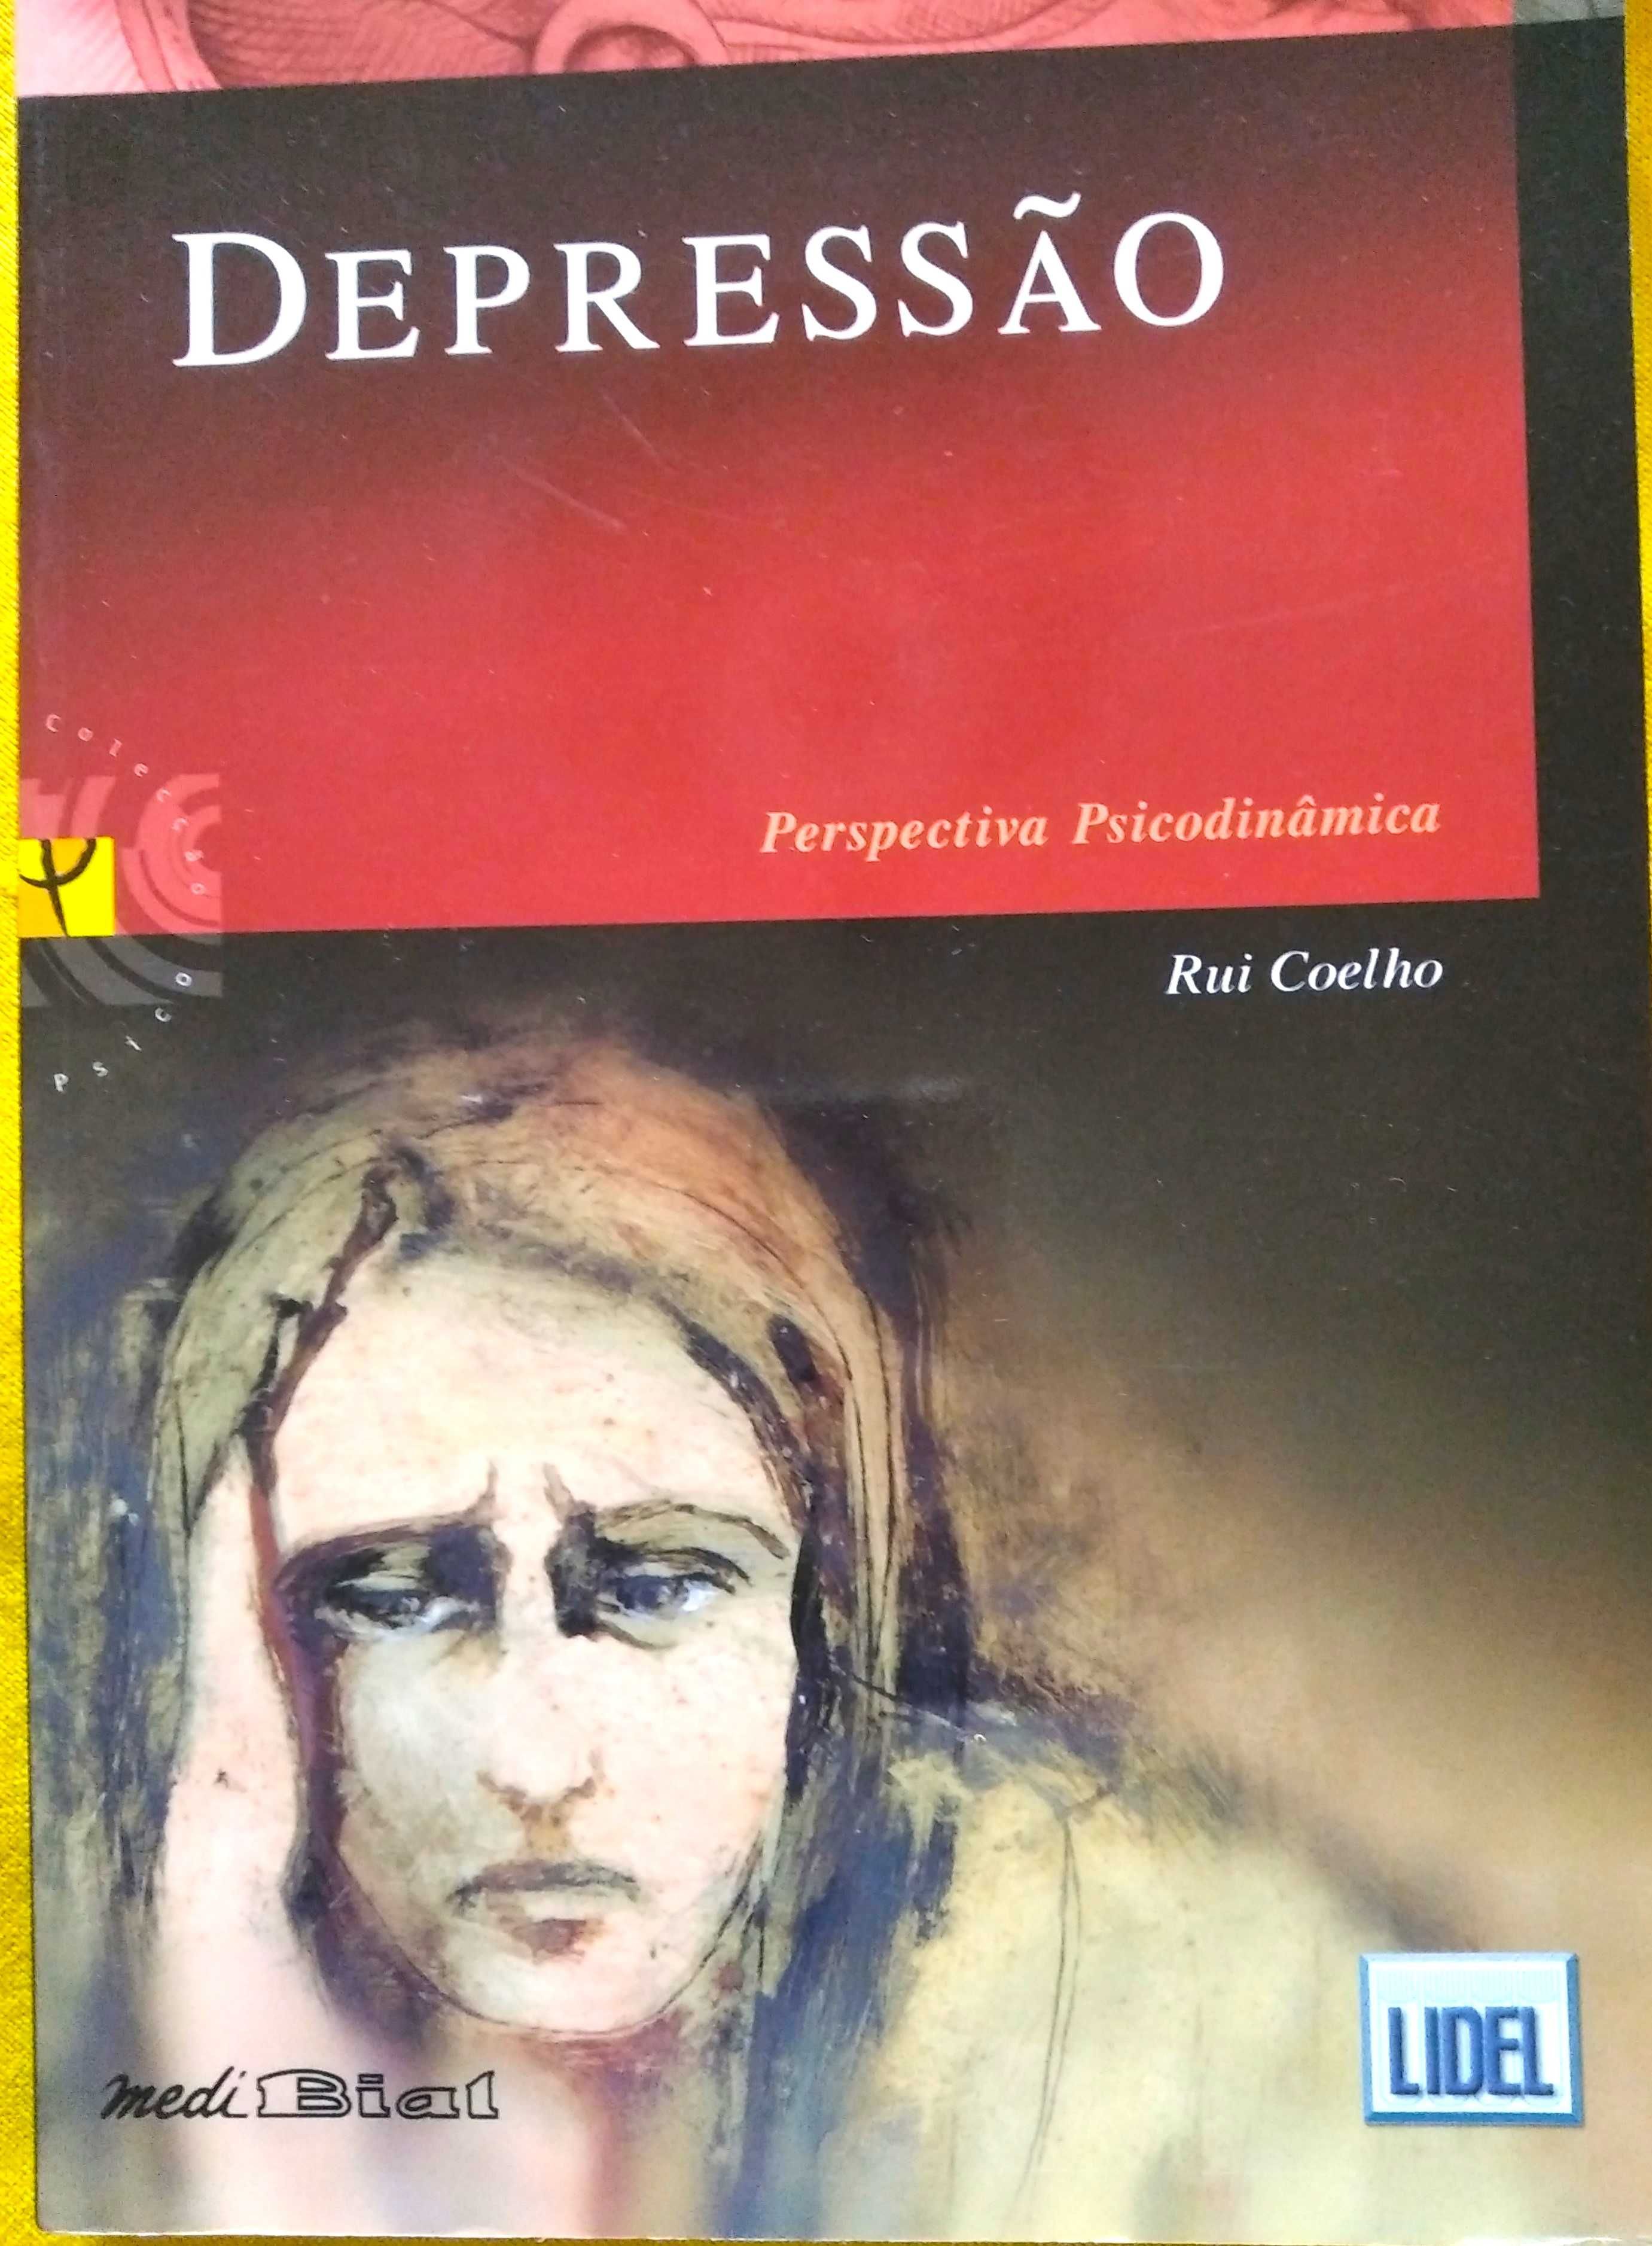 Livro de Psiquiatria: Depressão